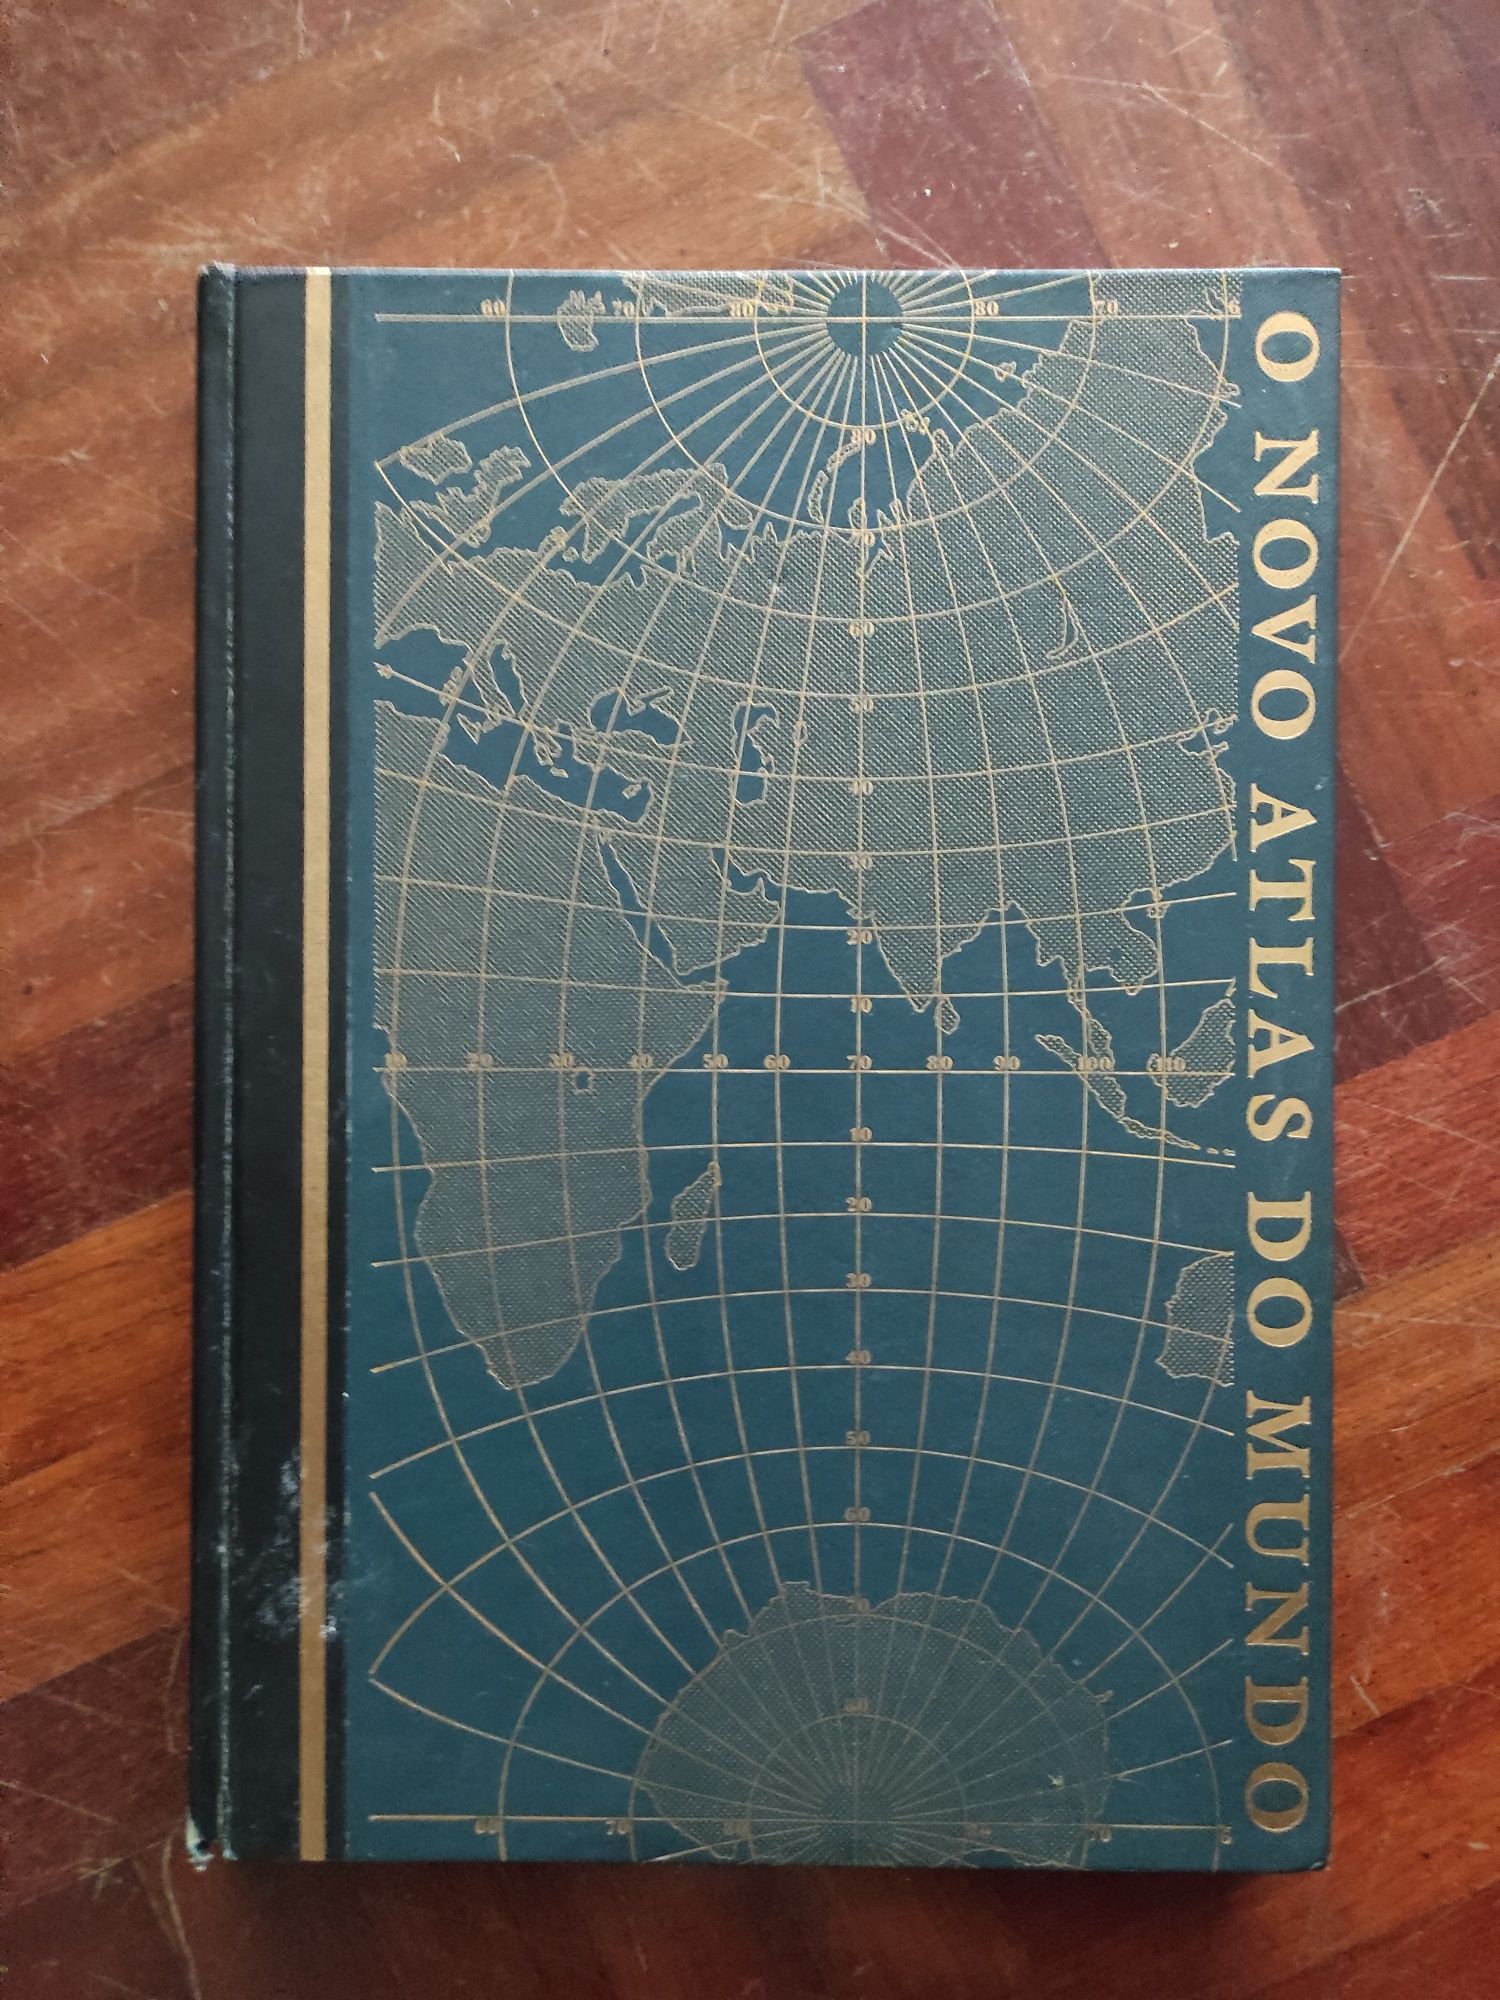 O novo atlas do mundo